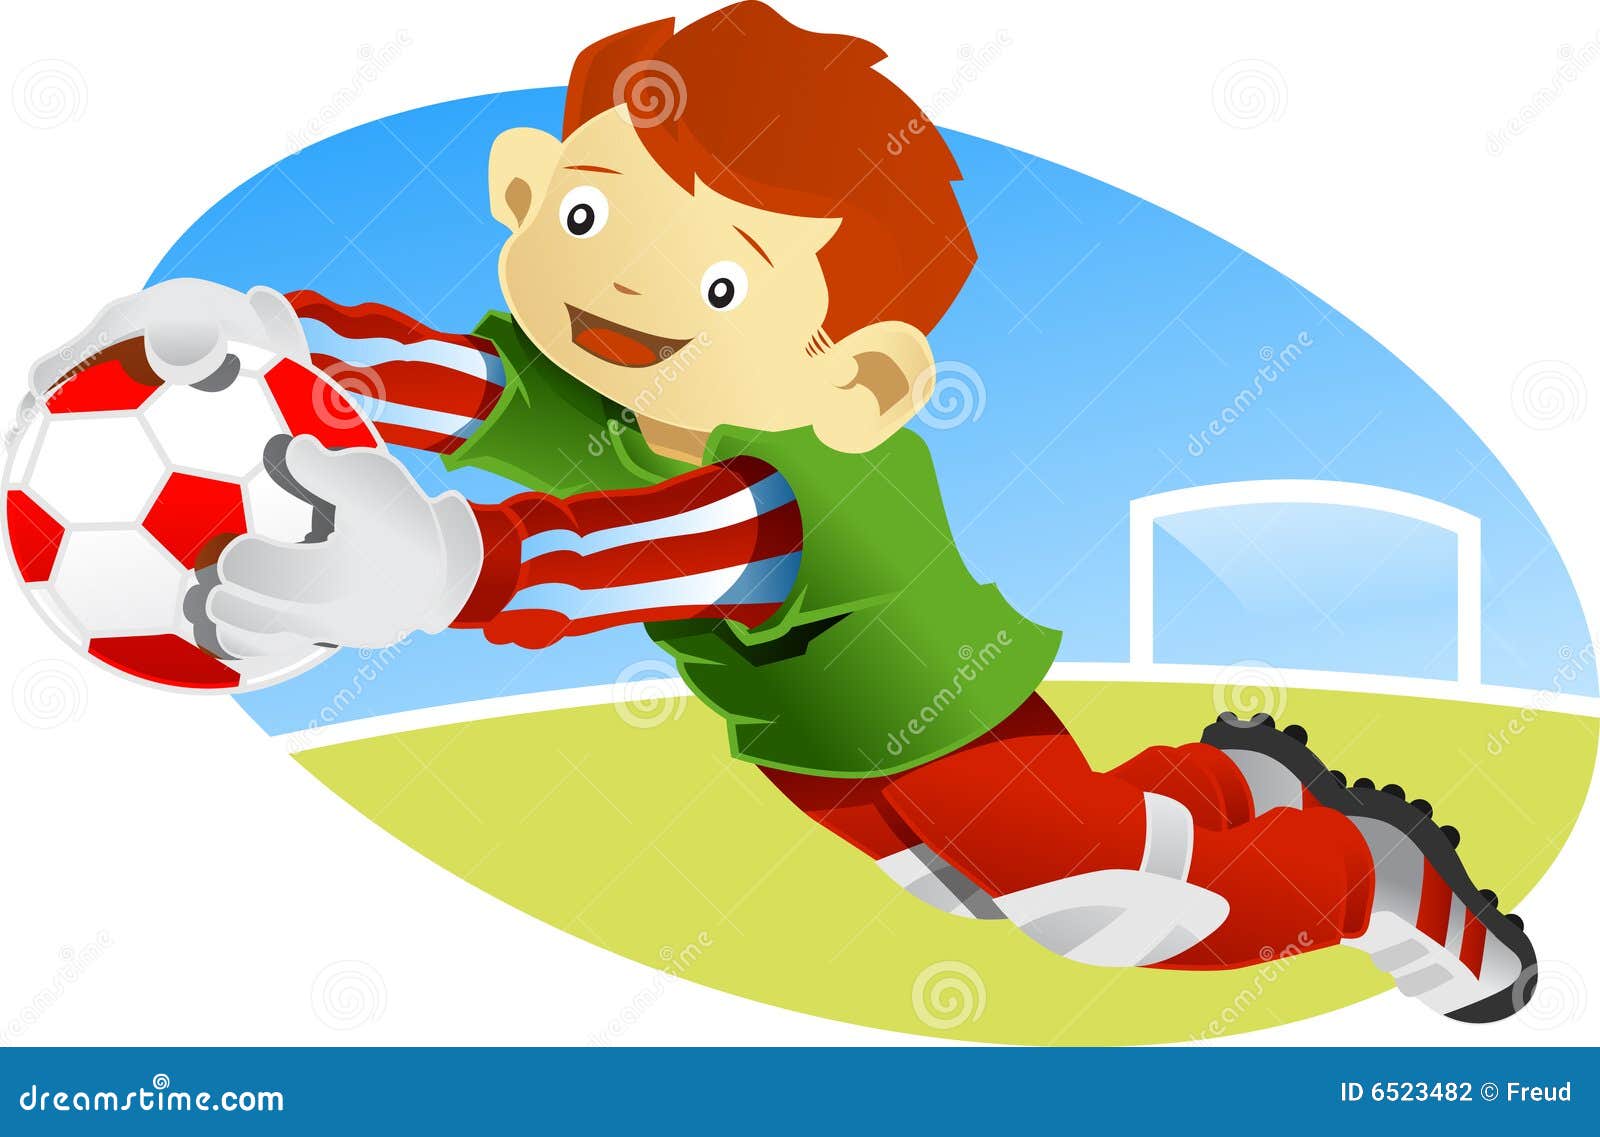 He can catch. Ловить мяч. Мальчик поймал мяч. Футбольный вратарь на прозрачном фоне. Рисунок поймать мяч.